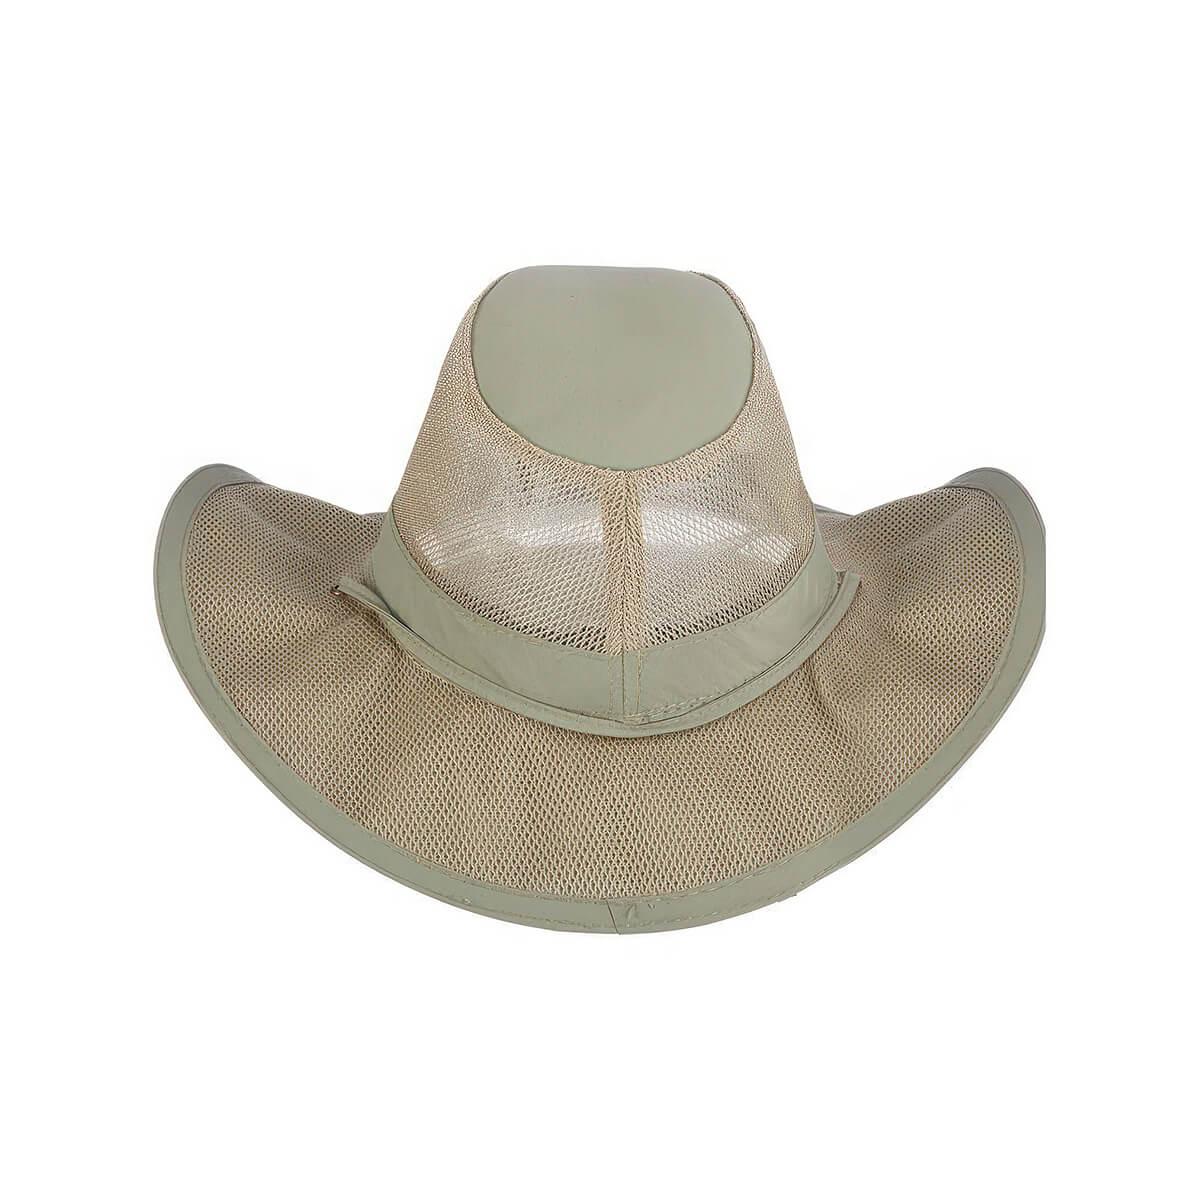 Men's Basin Nylon Safari Hat